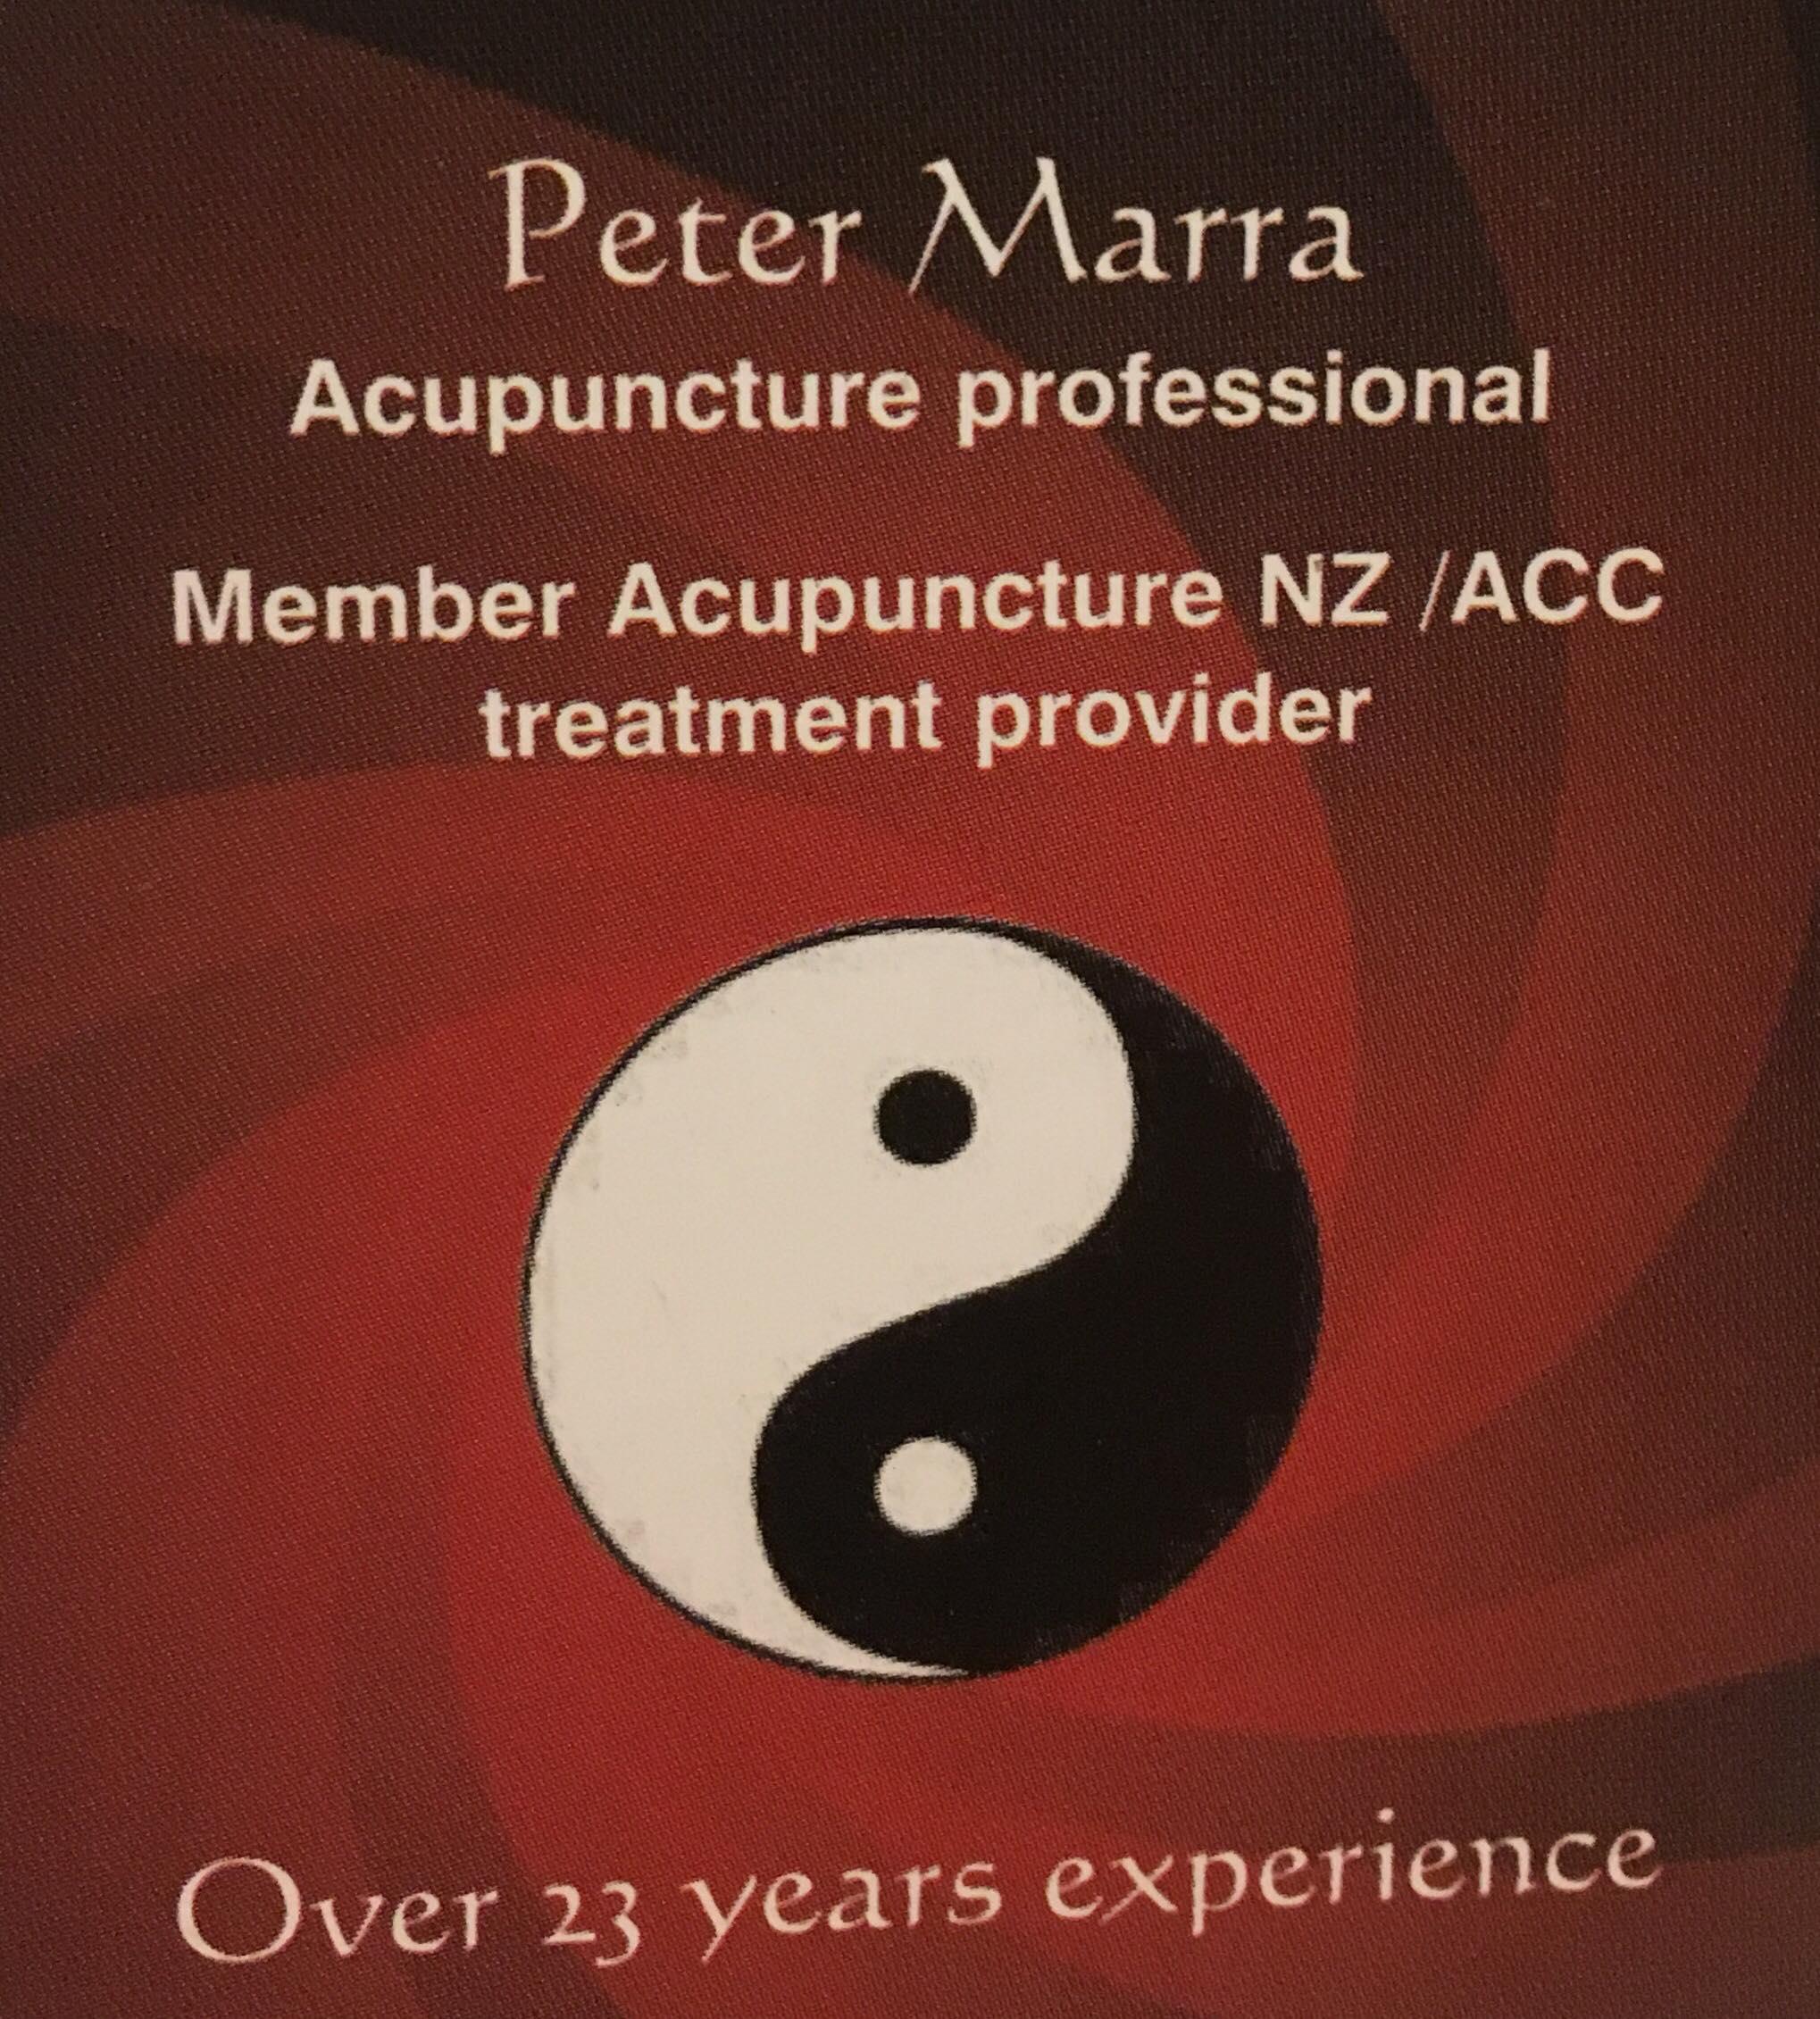 Peter Marra Acupuncture Professional